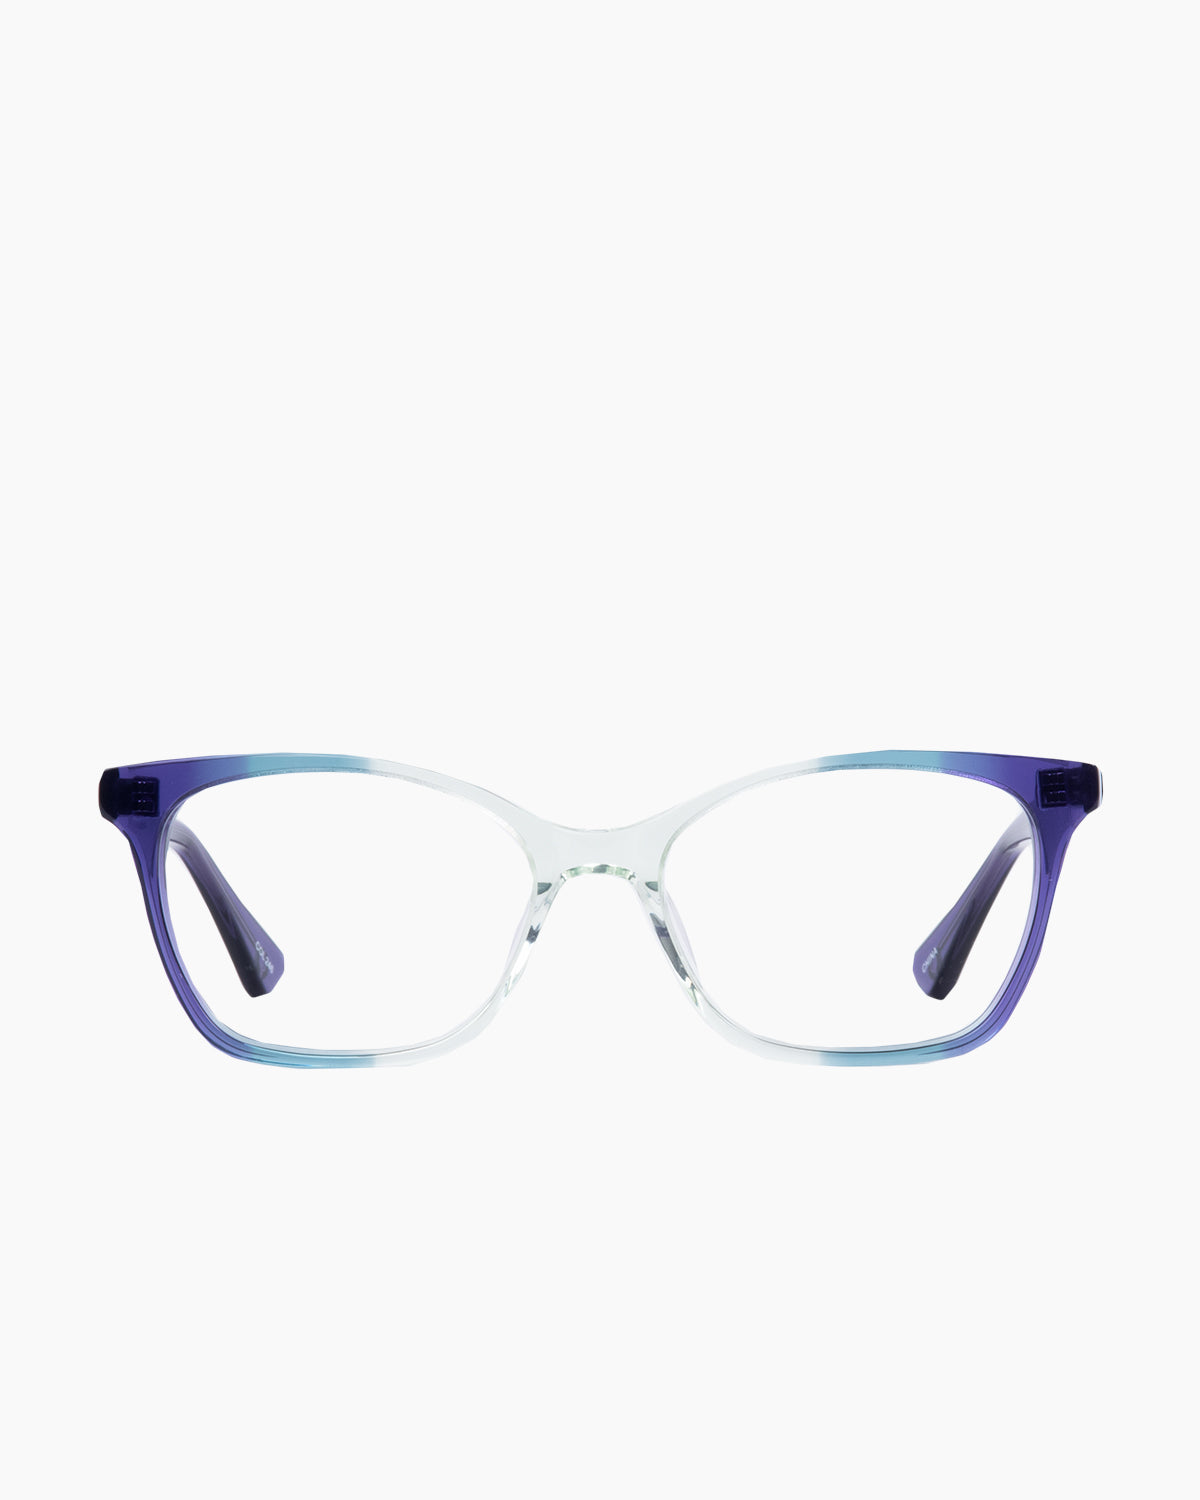 Evolve - Sophia - 246 | glasses bar